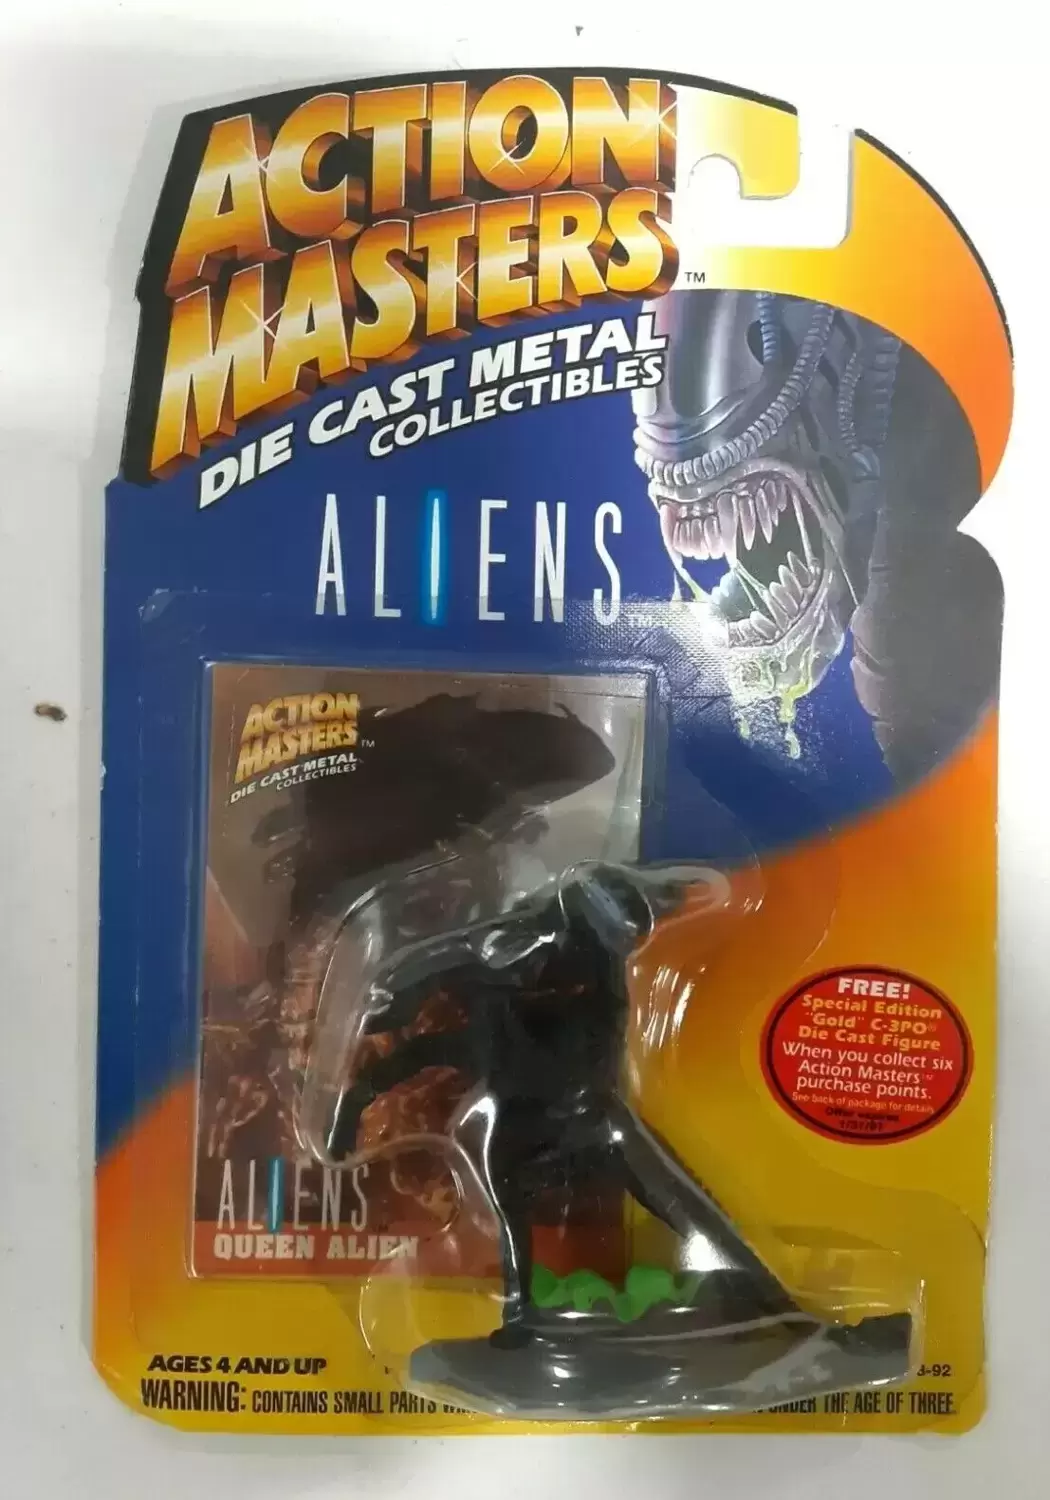 Action Masters - Die Cast Metal Collectibles - Aliens - Queen Alien